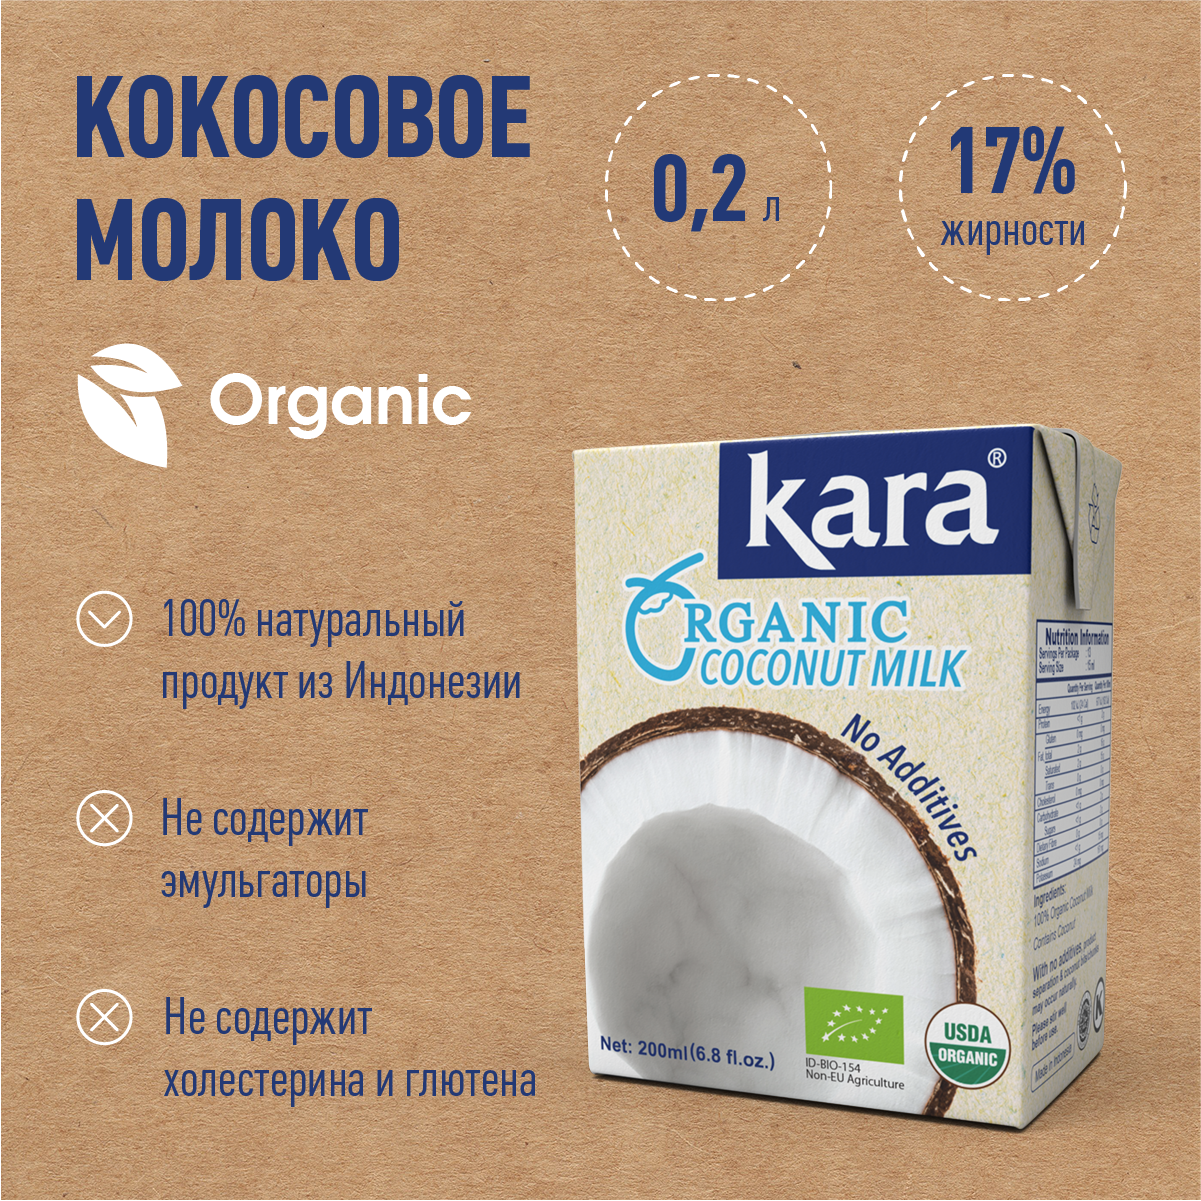 Органическое кокосовое молоко Кara Organic , ж.17% 200 мл.